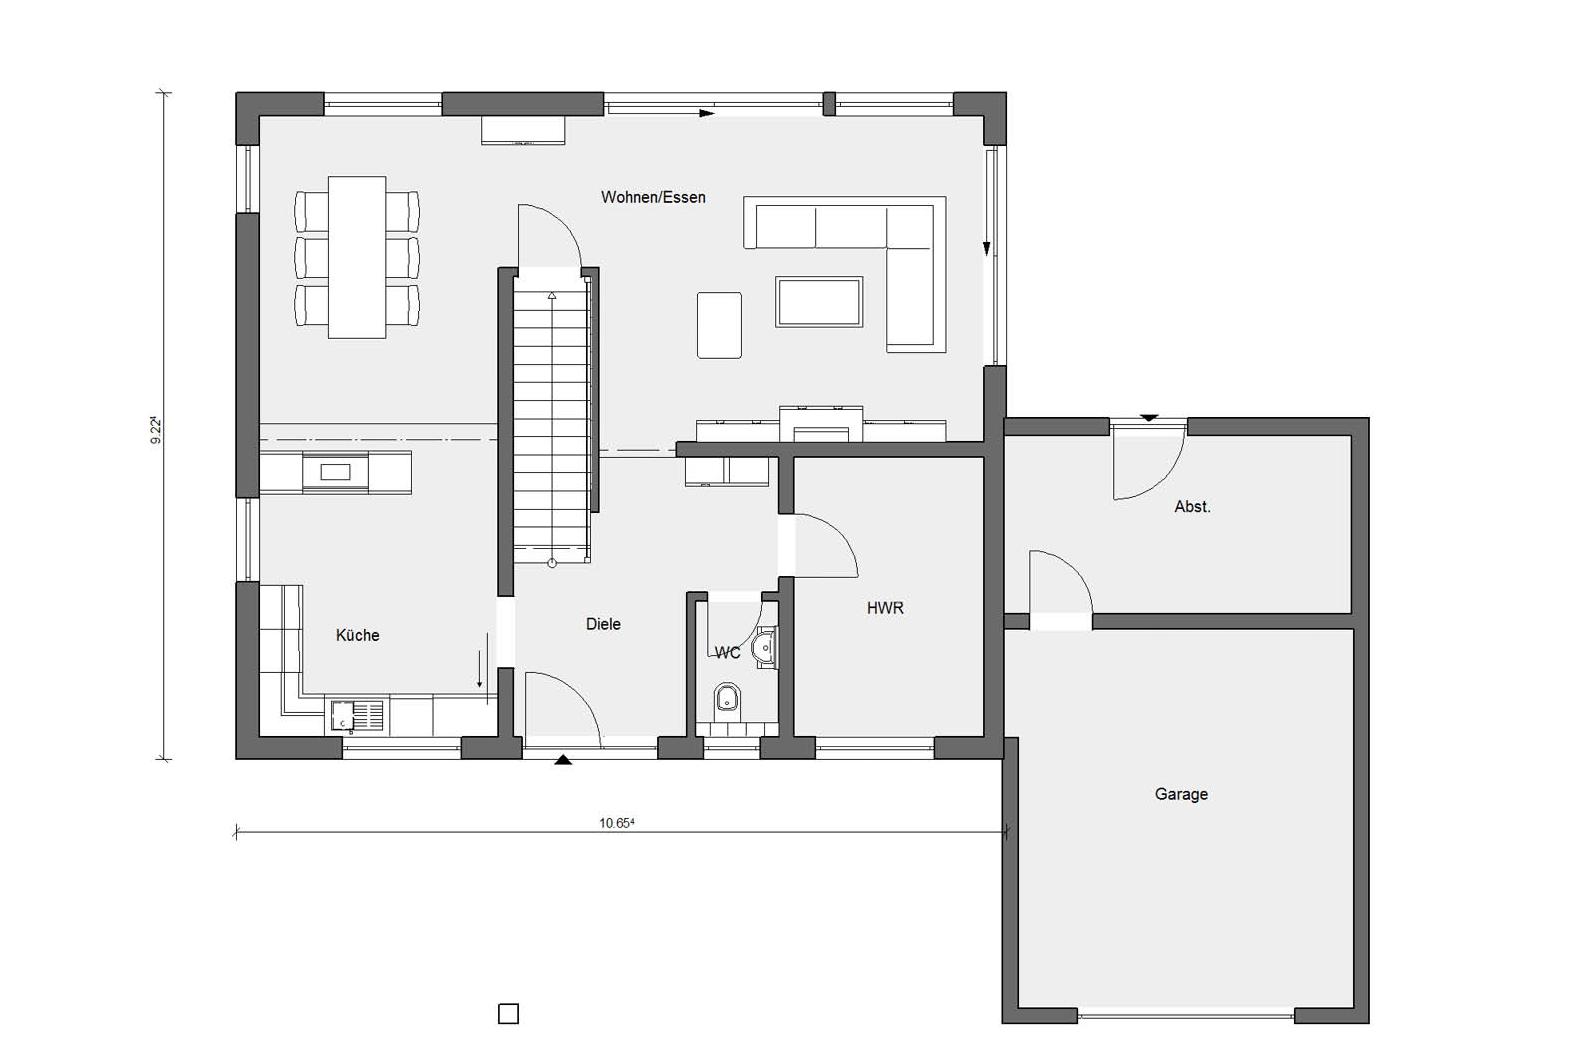 Plan du rez-de-chaussée E 20-157.2 Maison CUBE de SchwörerHaus